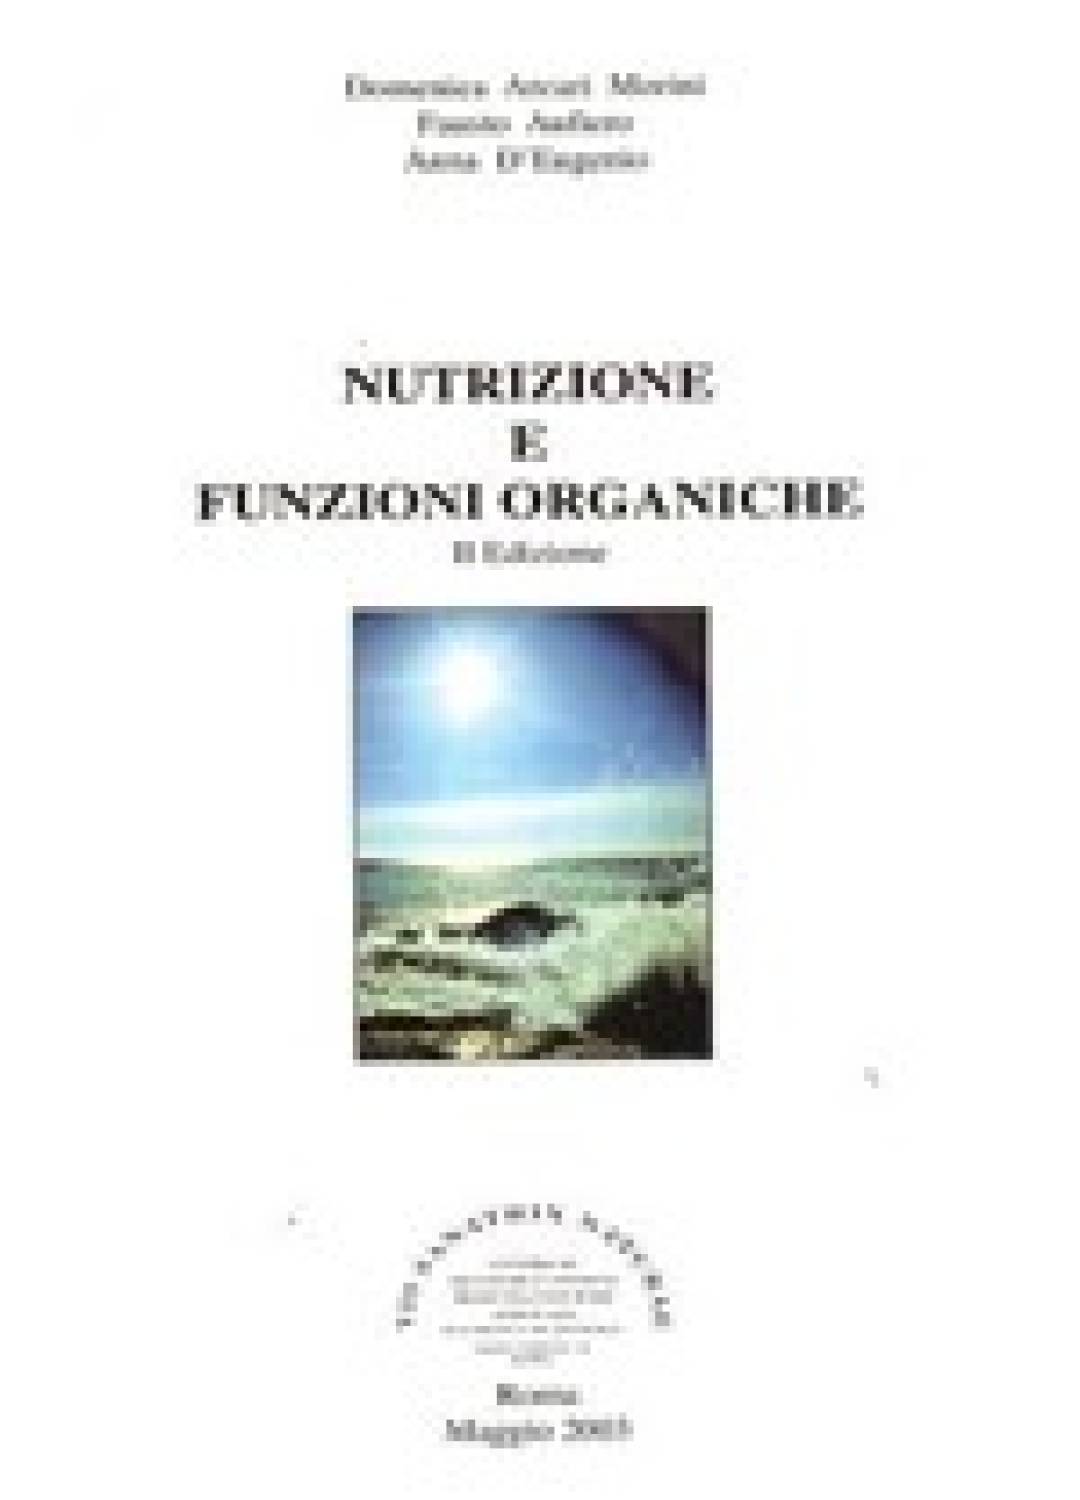 Nutrizione e funzioni organiche - Arcari Morini, D'Eugenio, Aufiero